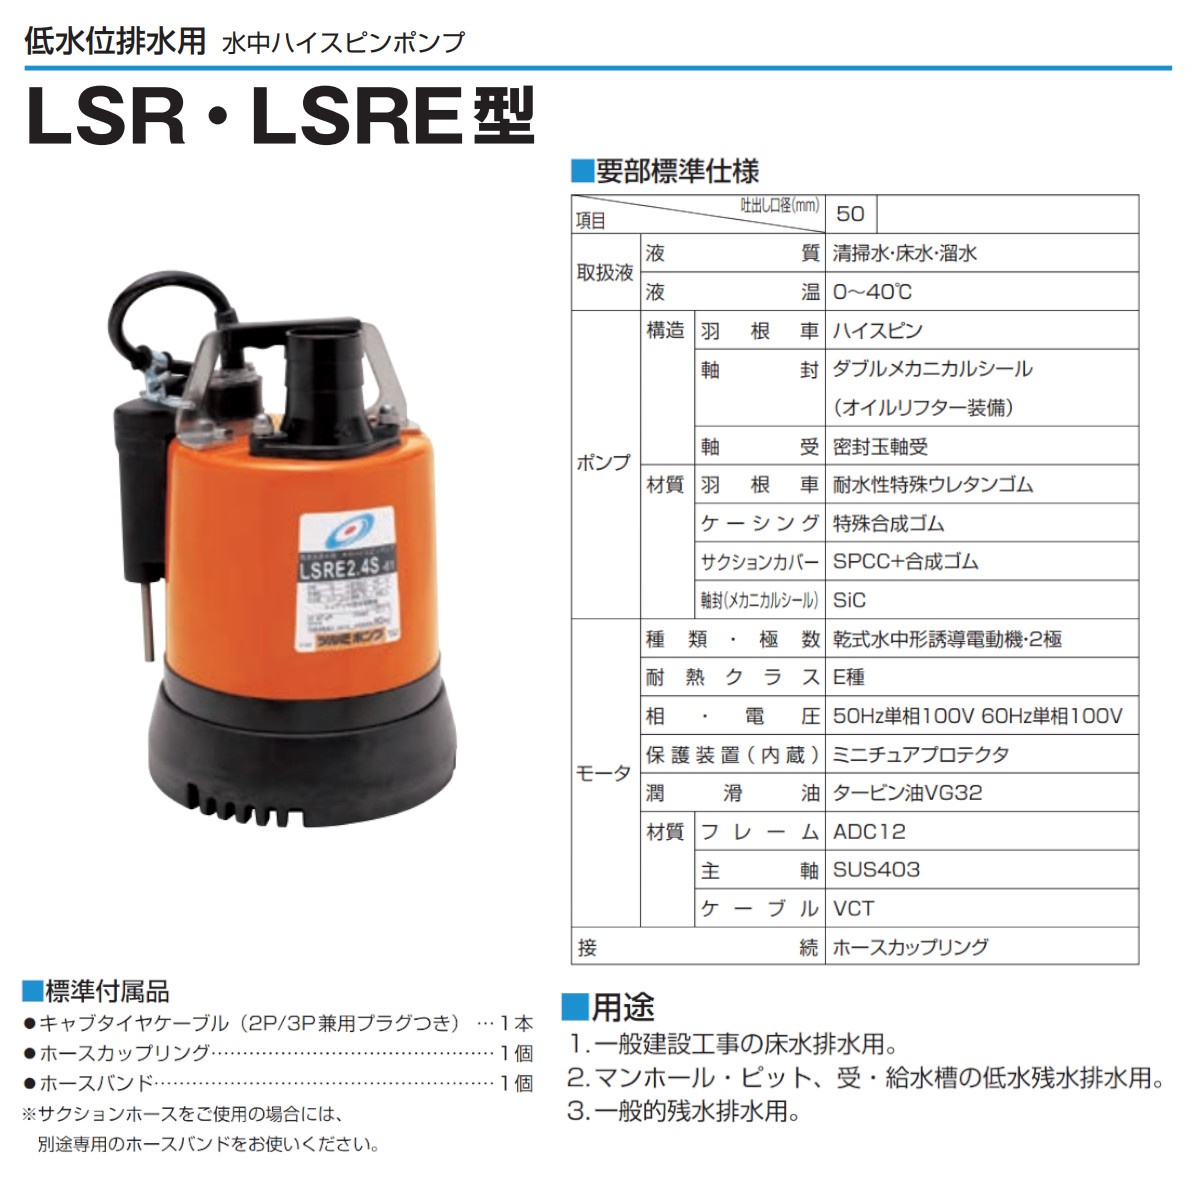 ツルミ 低水位排水用 水中ポンプ LSRE2.4S 自動型 単相100V 50Hz/60Hz